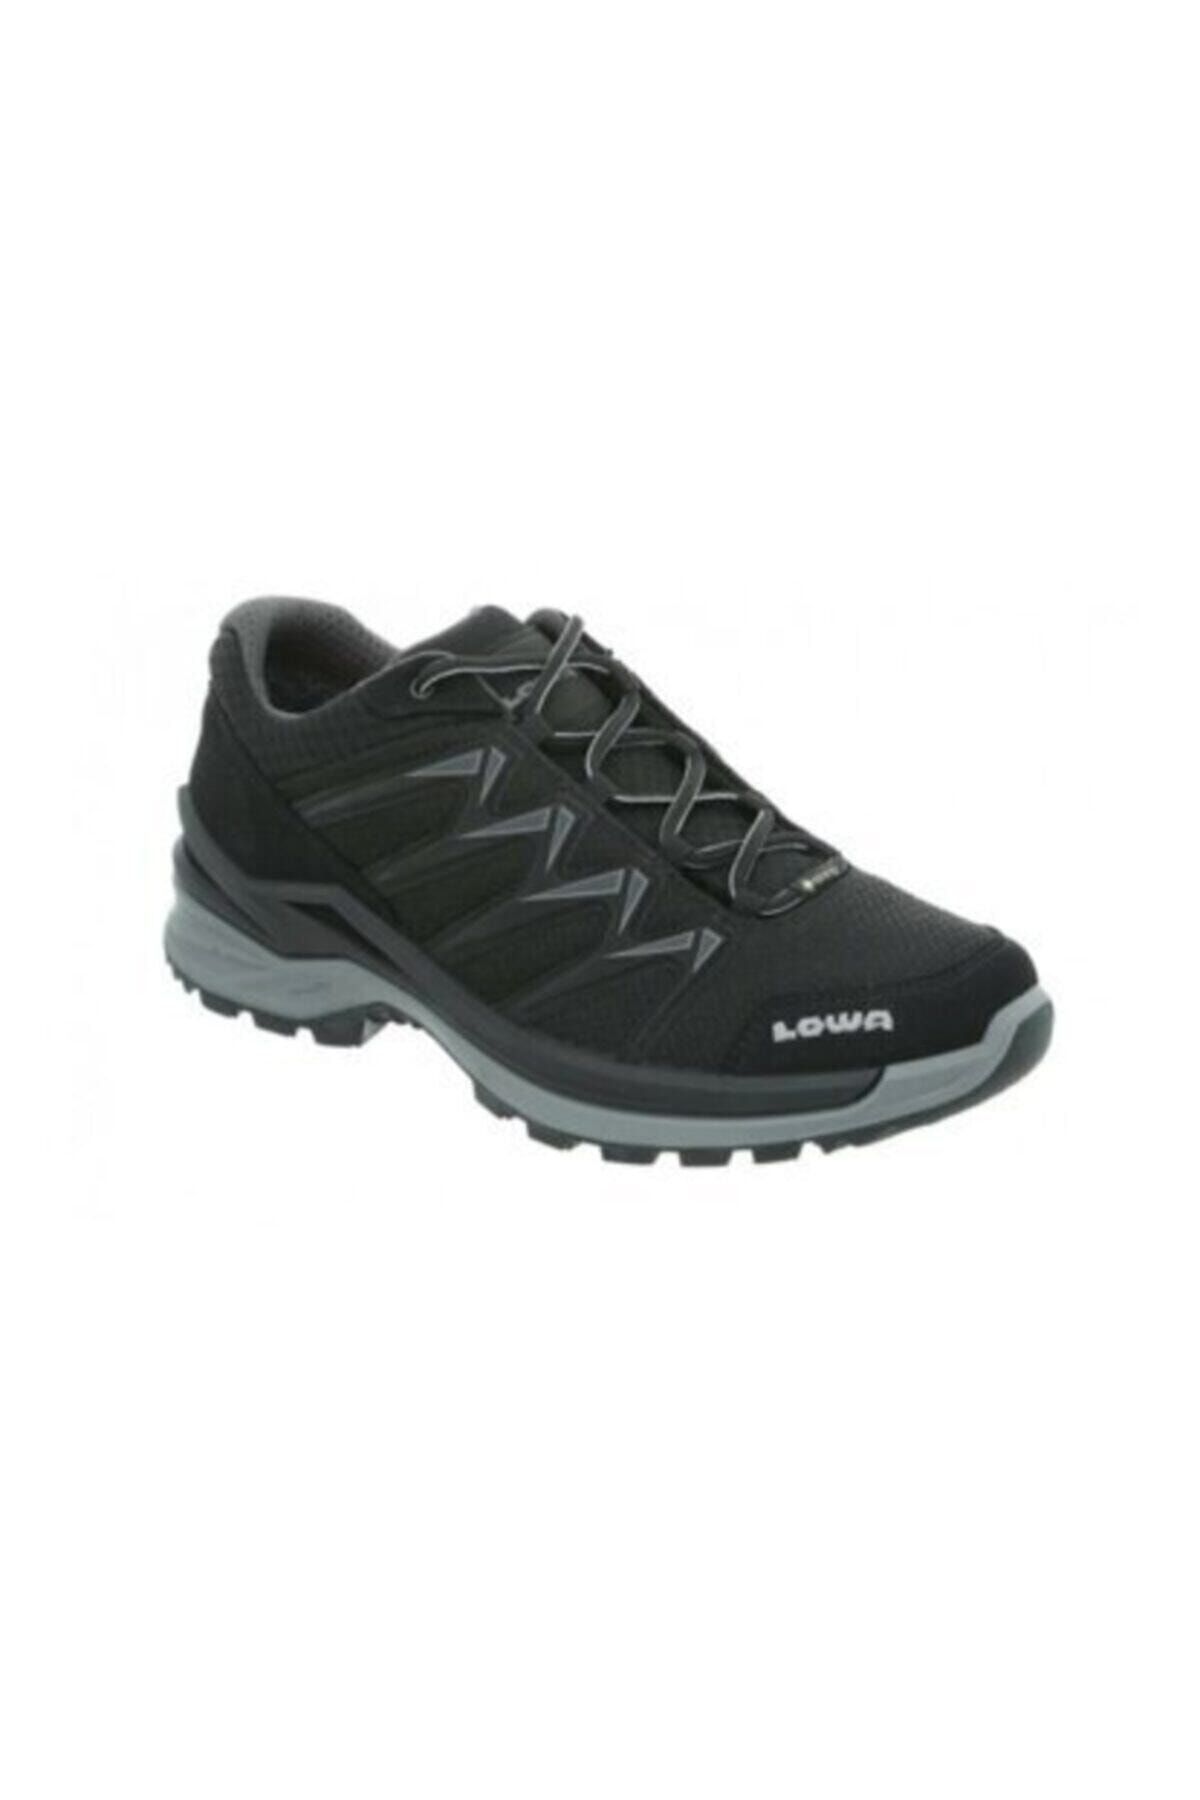 Lowa Innox Pro Gtx Low Erkek Ayakkabısı - 310709-9930